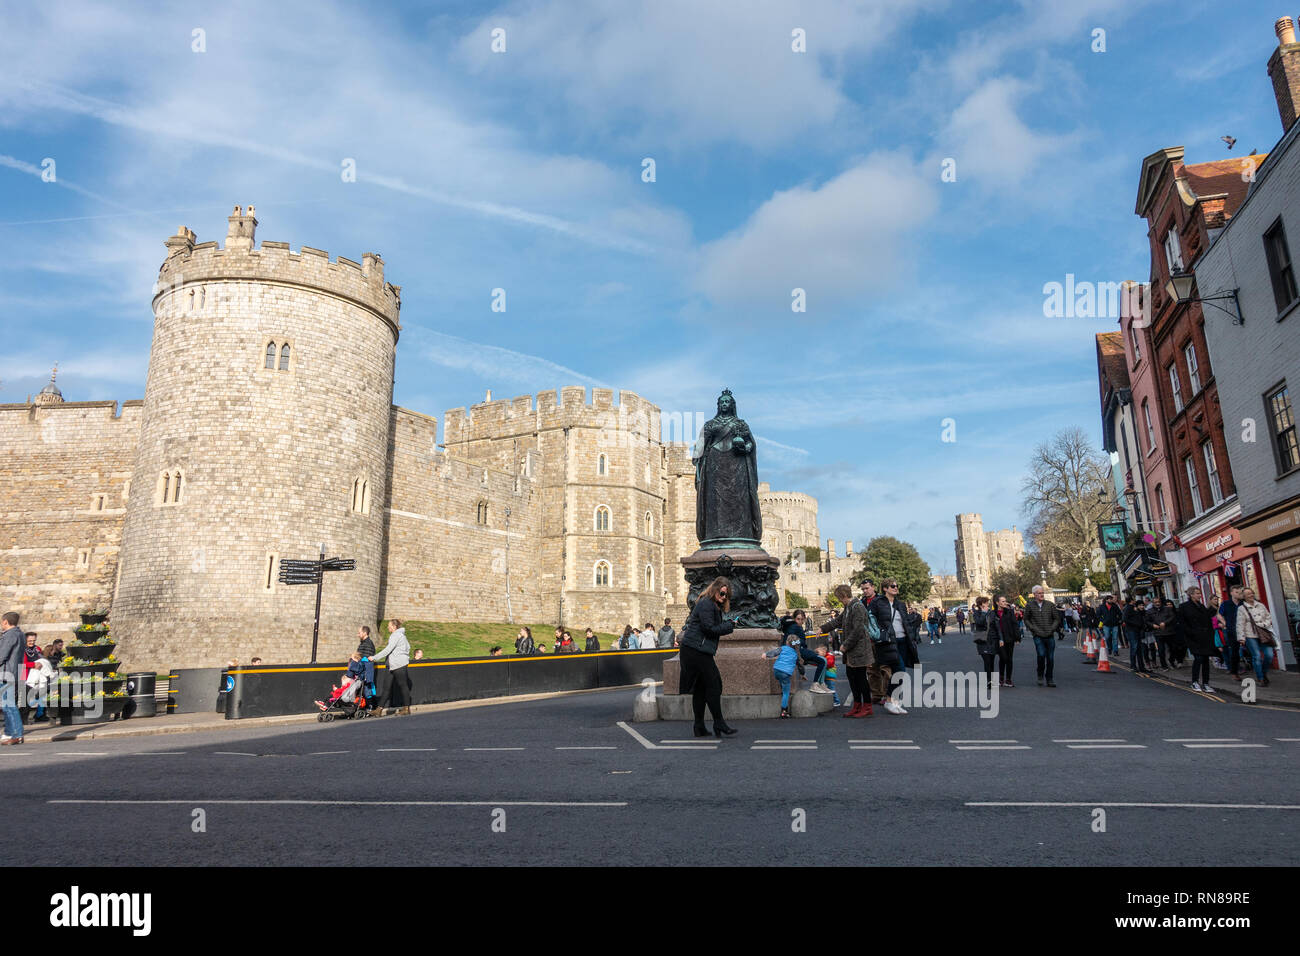 Una statua della regina Victoria sorge al di fuori del Castello di Windsor in Windsor Foto Stock